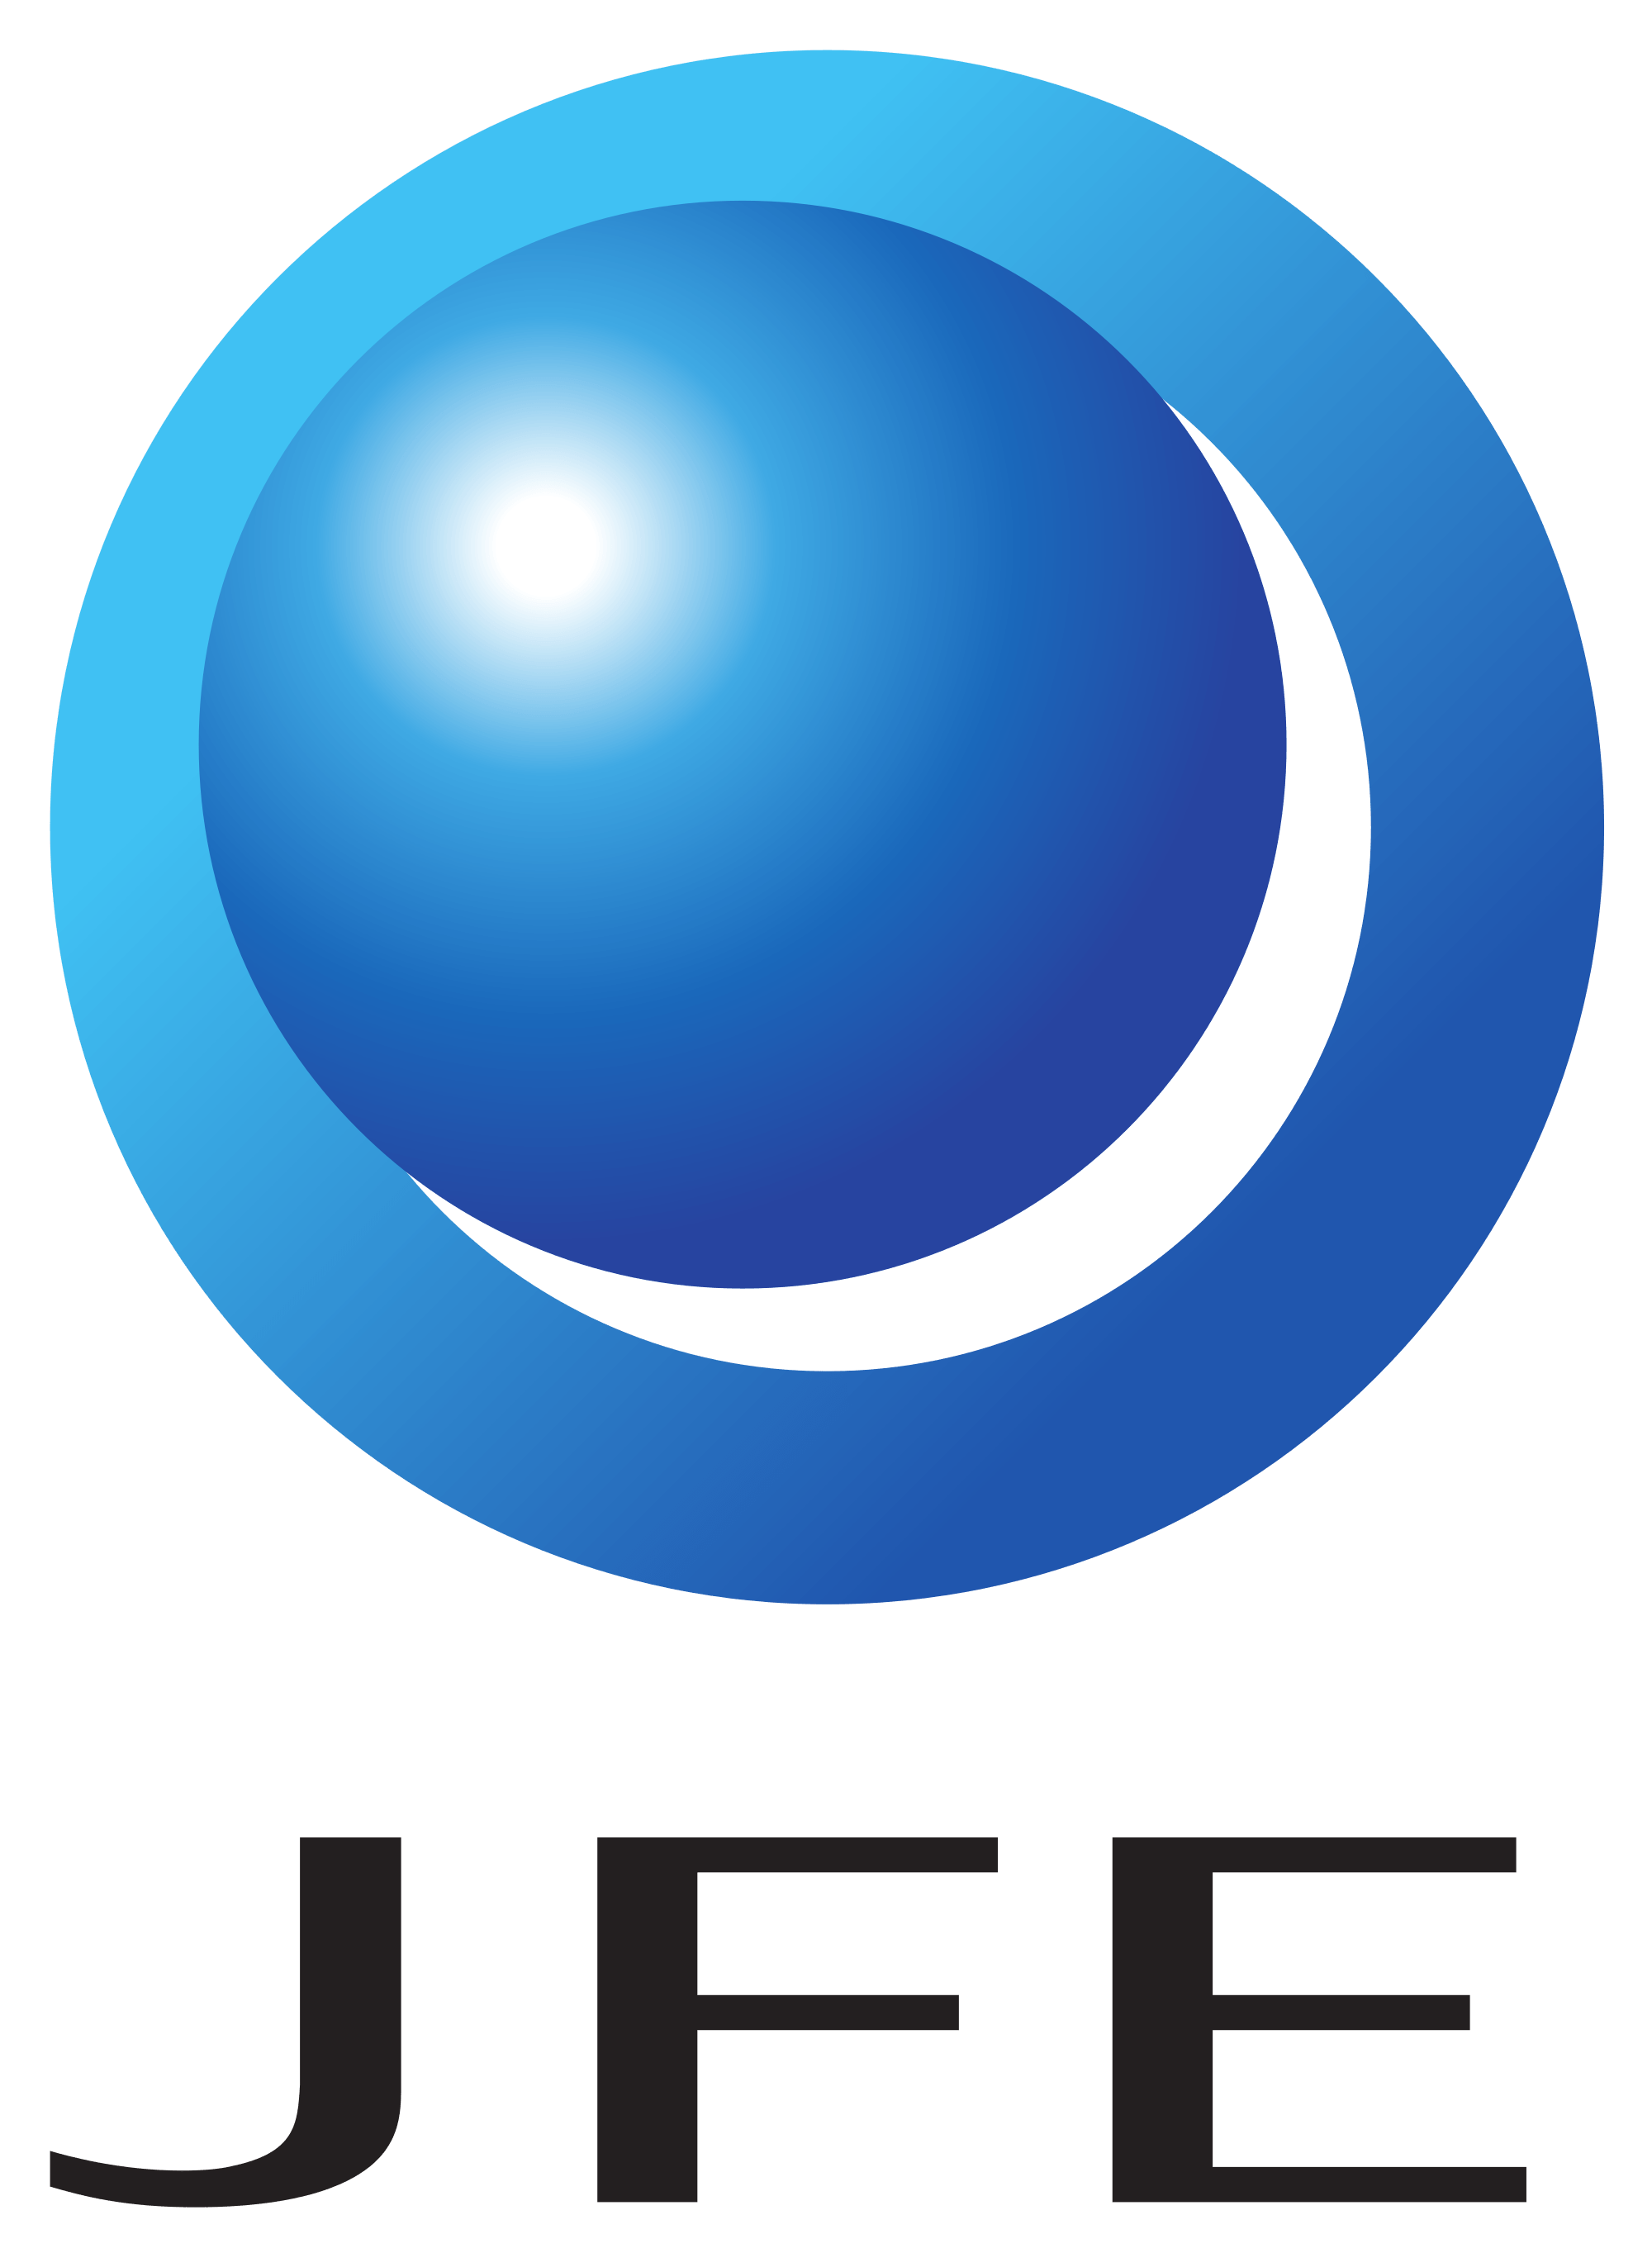 Jfe Logo - JFE Holdings